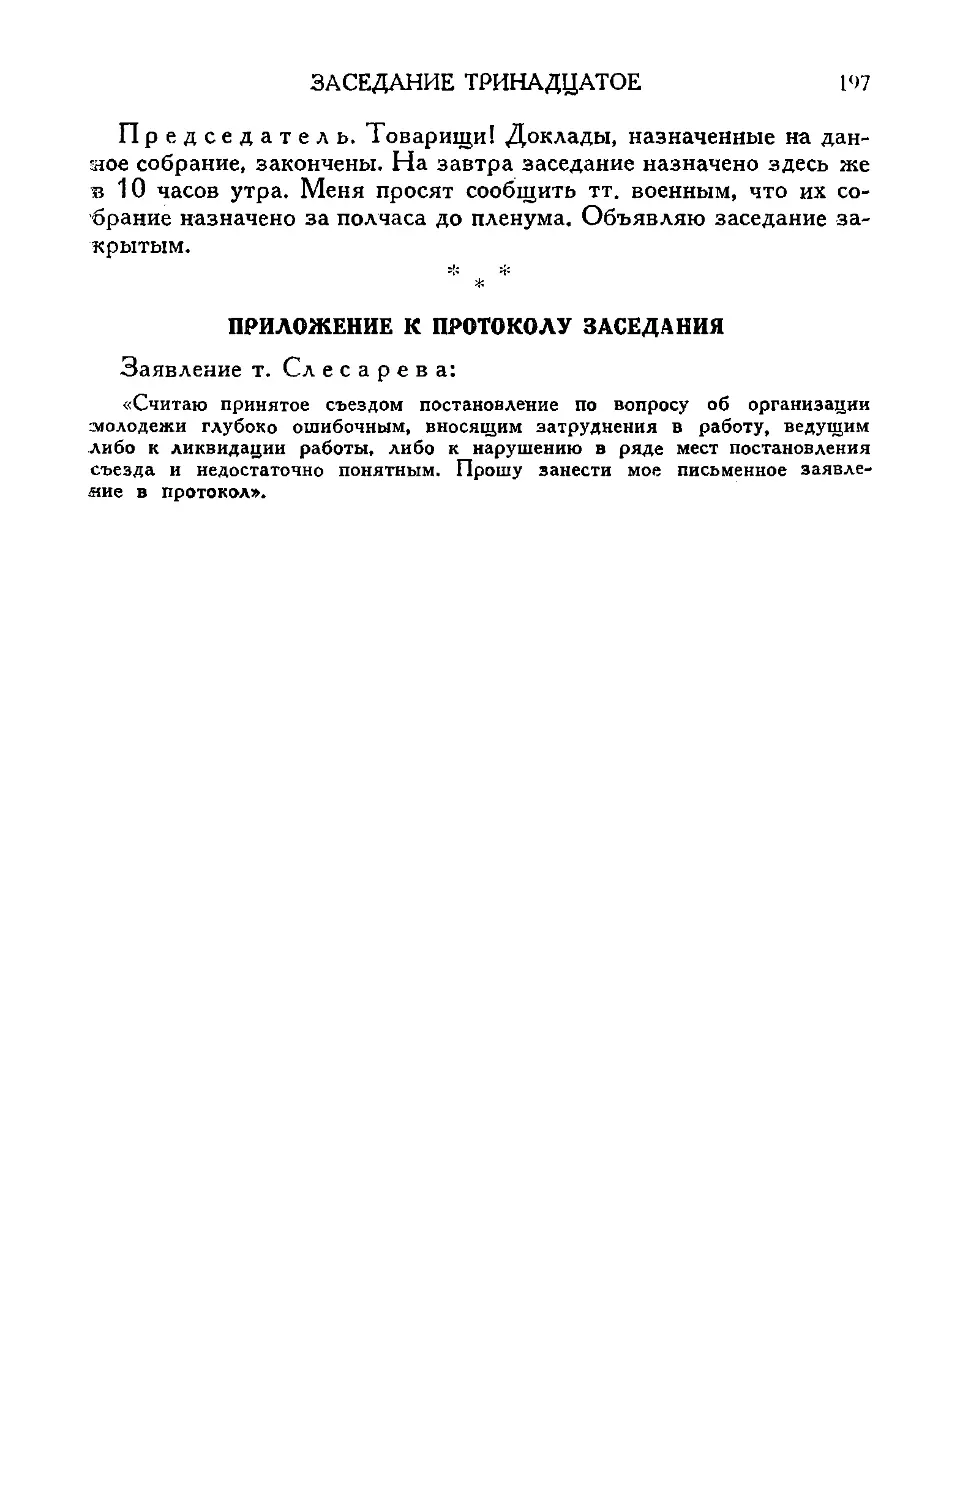 Заявление т. Слесарева